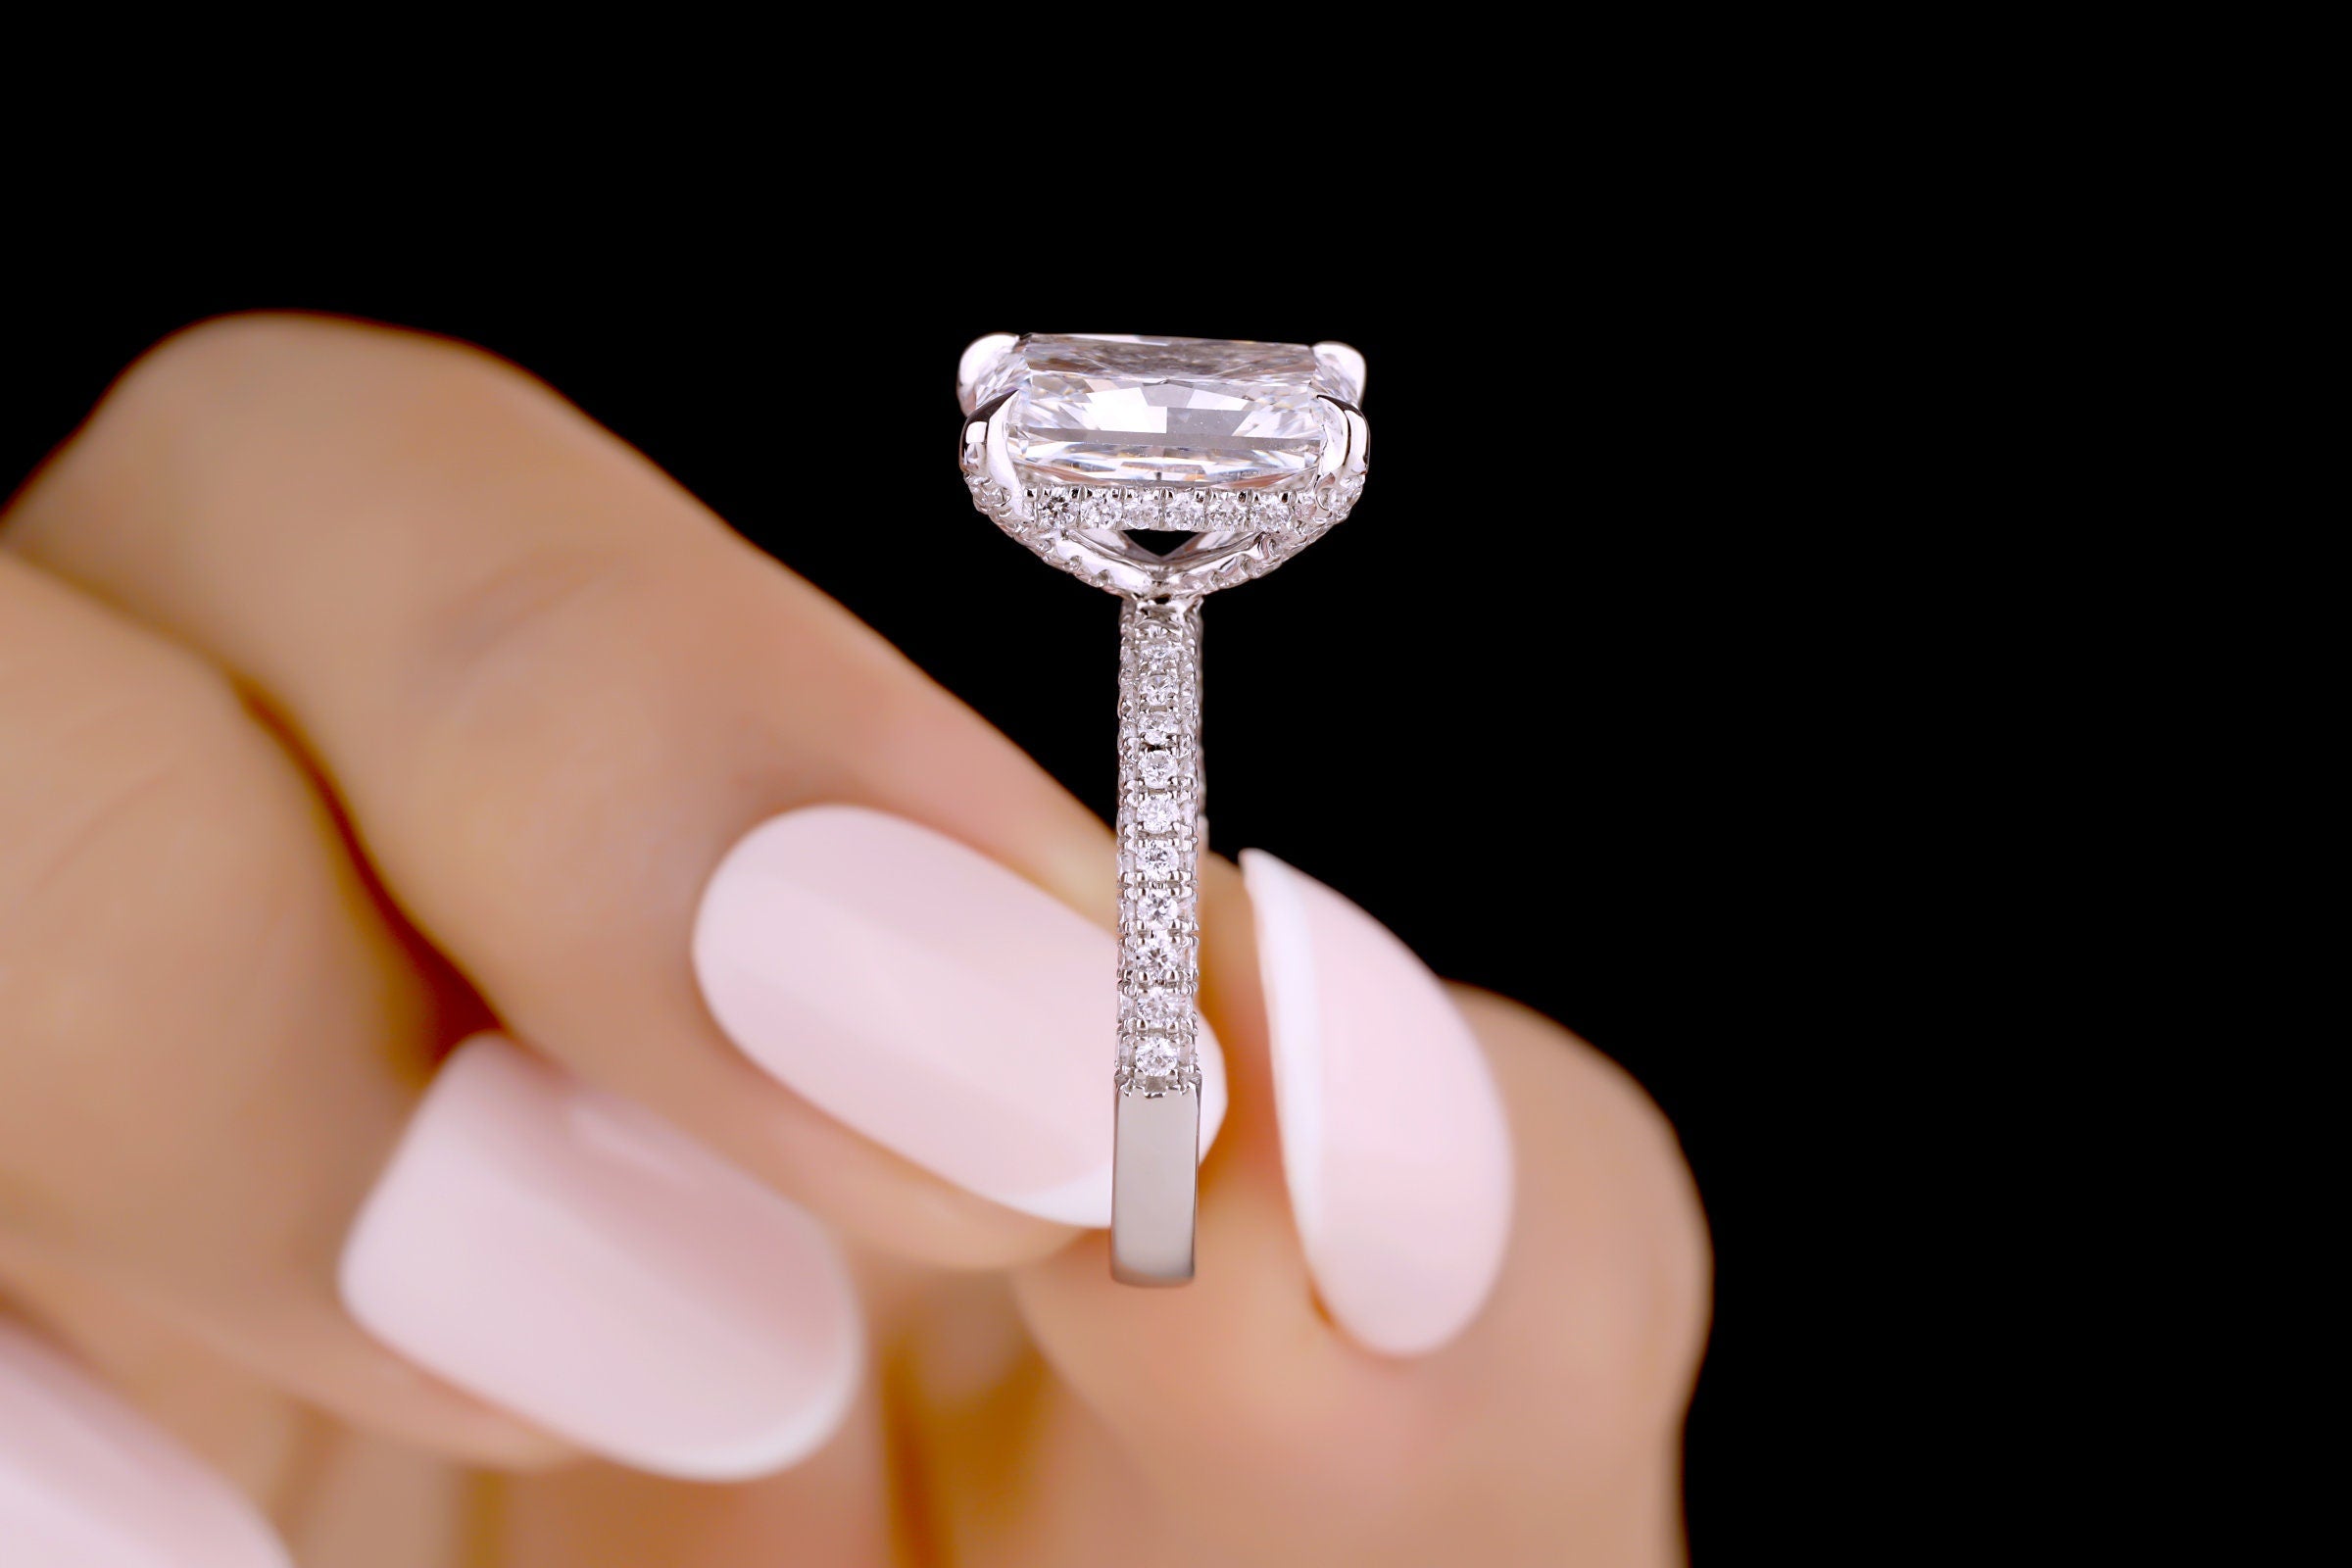 4.00 CT Radiant Cut Moissanite Engagement Ring Hidden Halo Anniversary Ring Solid 10K/14K/18K White Gold Ring Moissanite Bridal Ring For Her